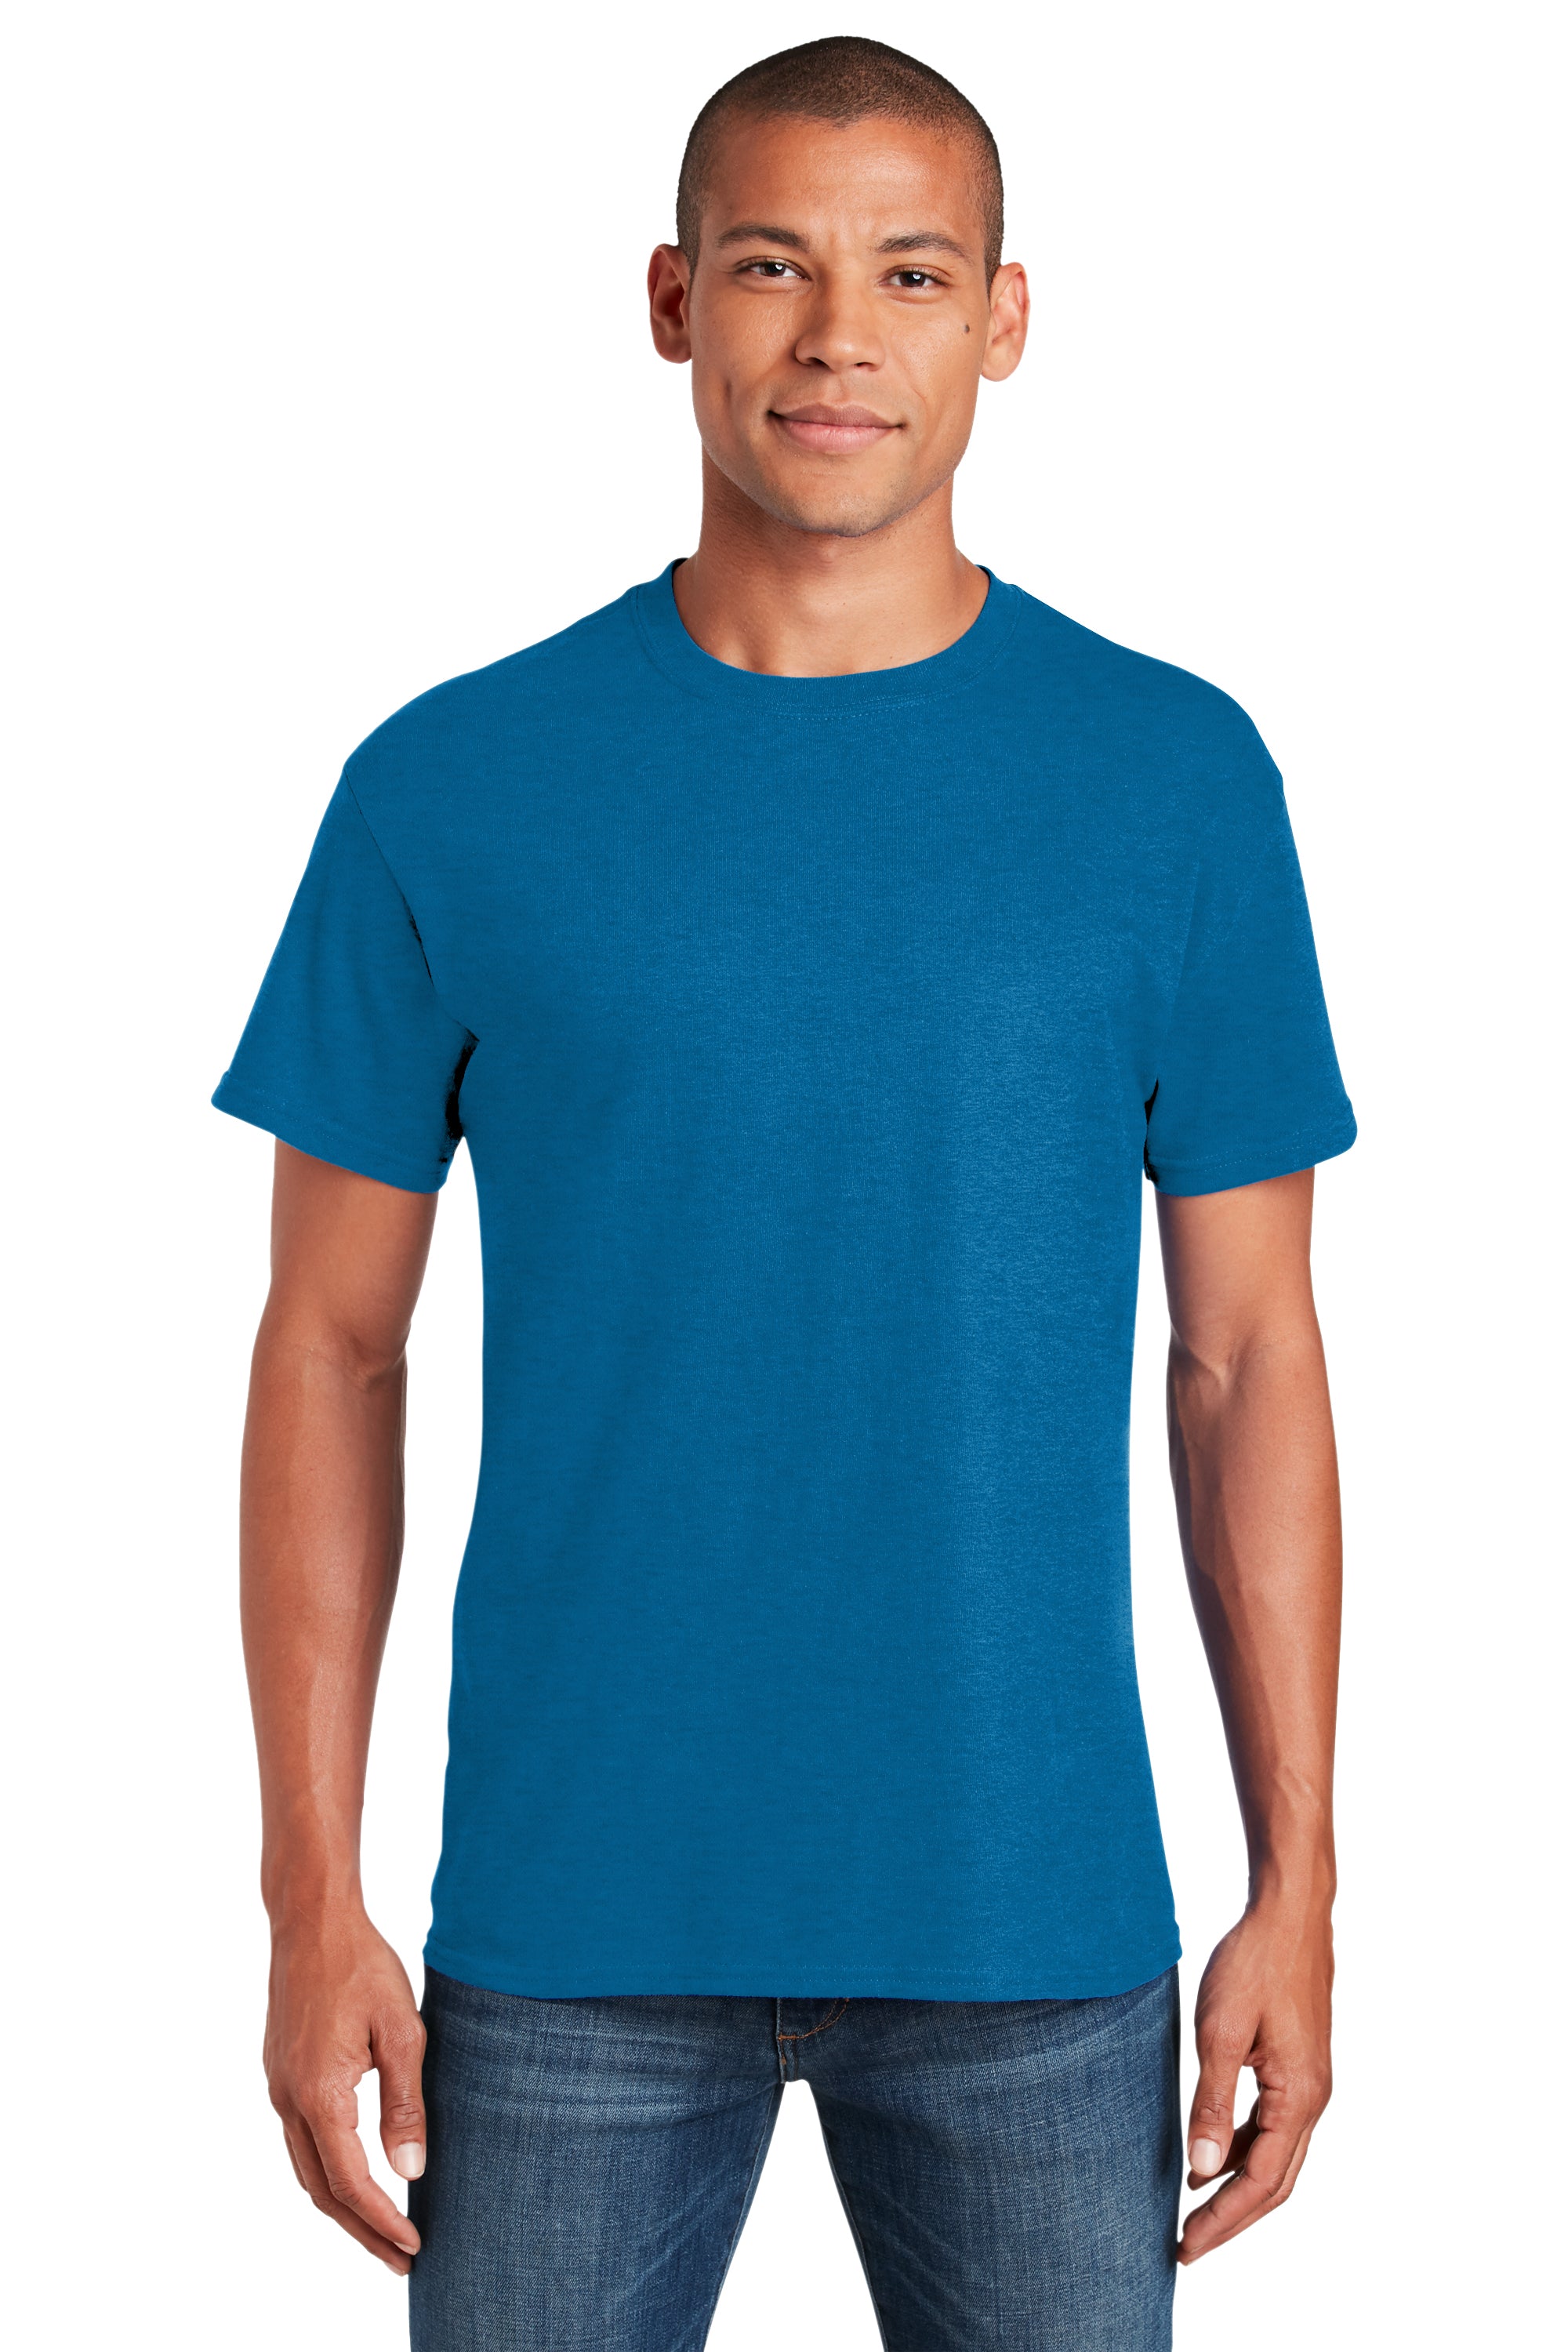 blue cotton t shirt